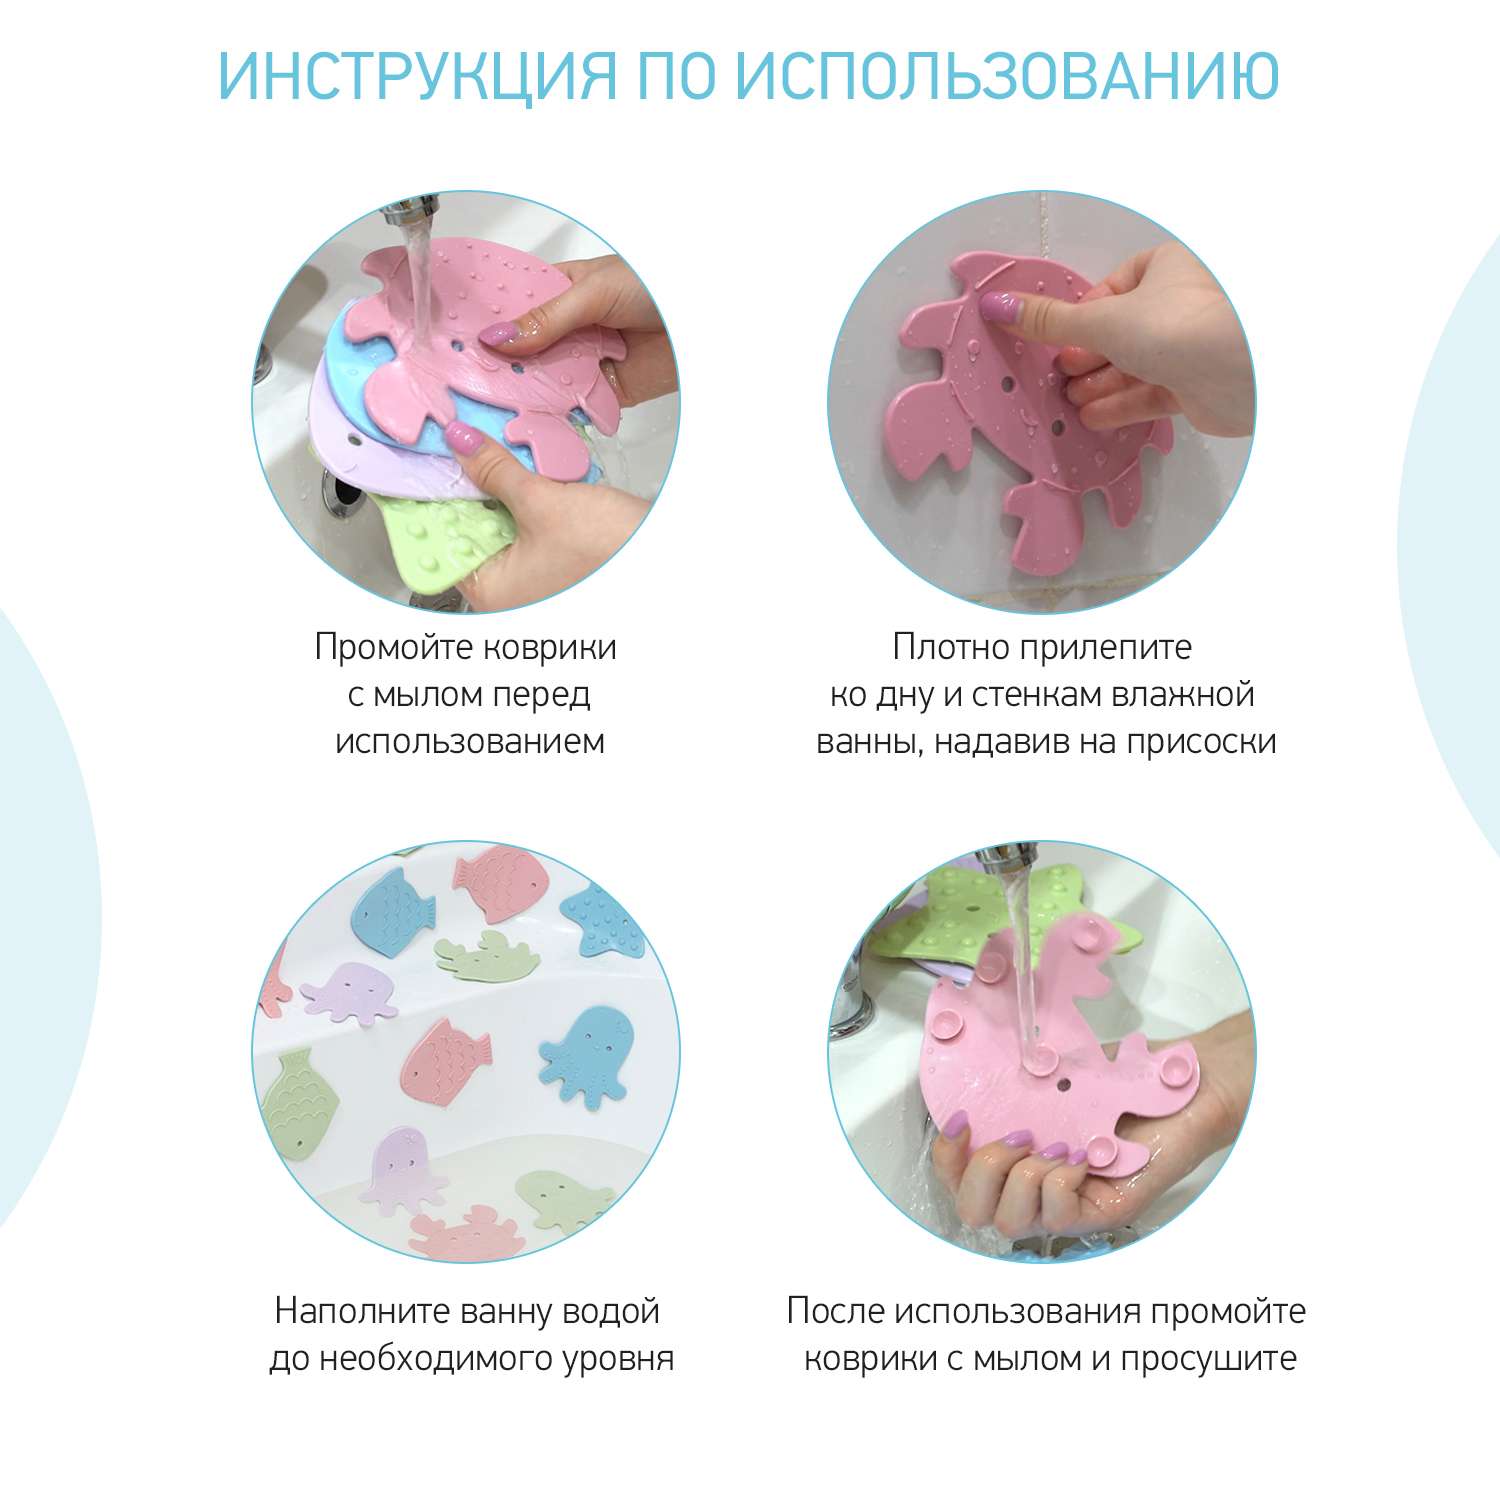 Мини-коврики детские ROXY-KIDS для ванной противоскользящие Sea animals 12 шт цвета в ассортименте - фото 9